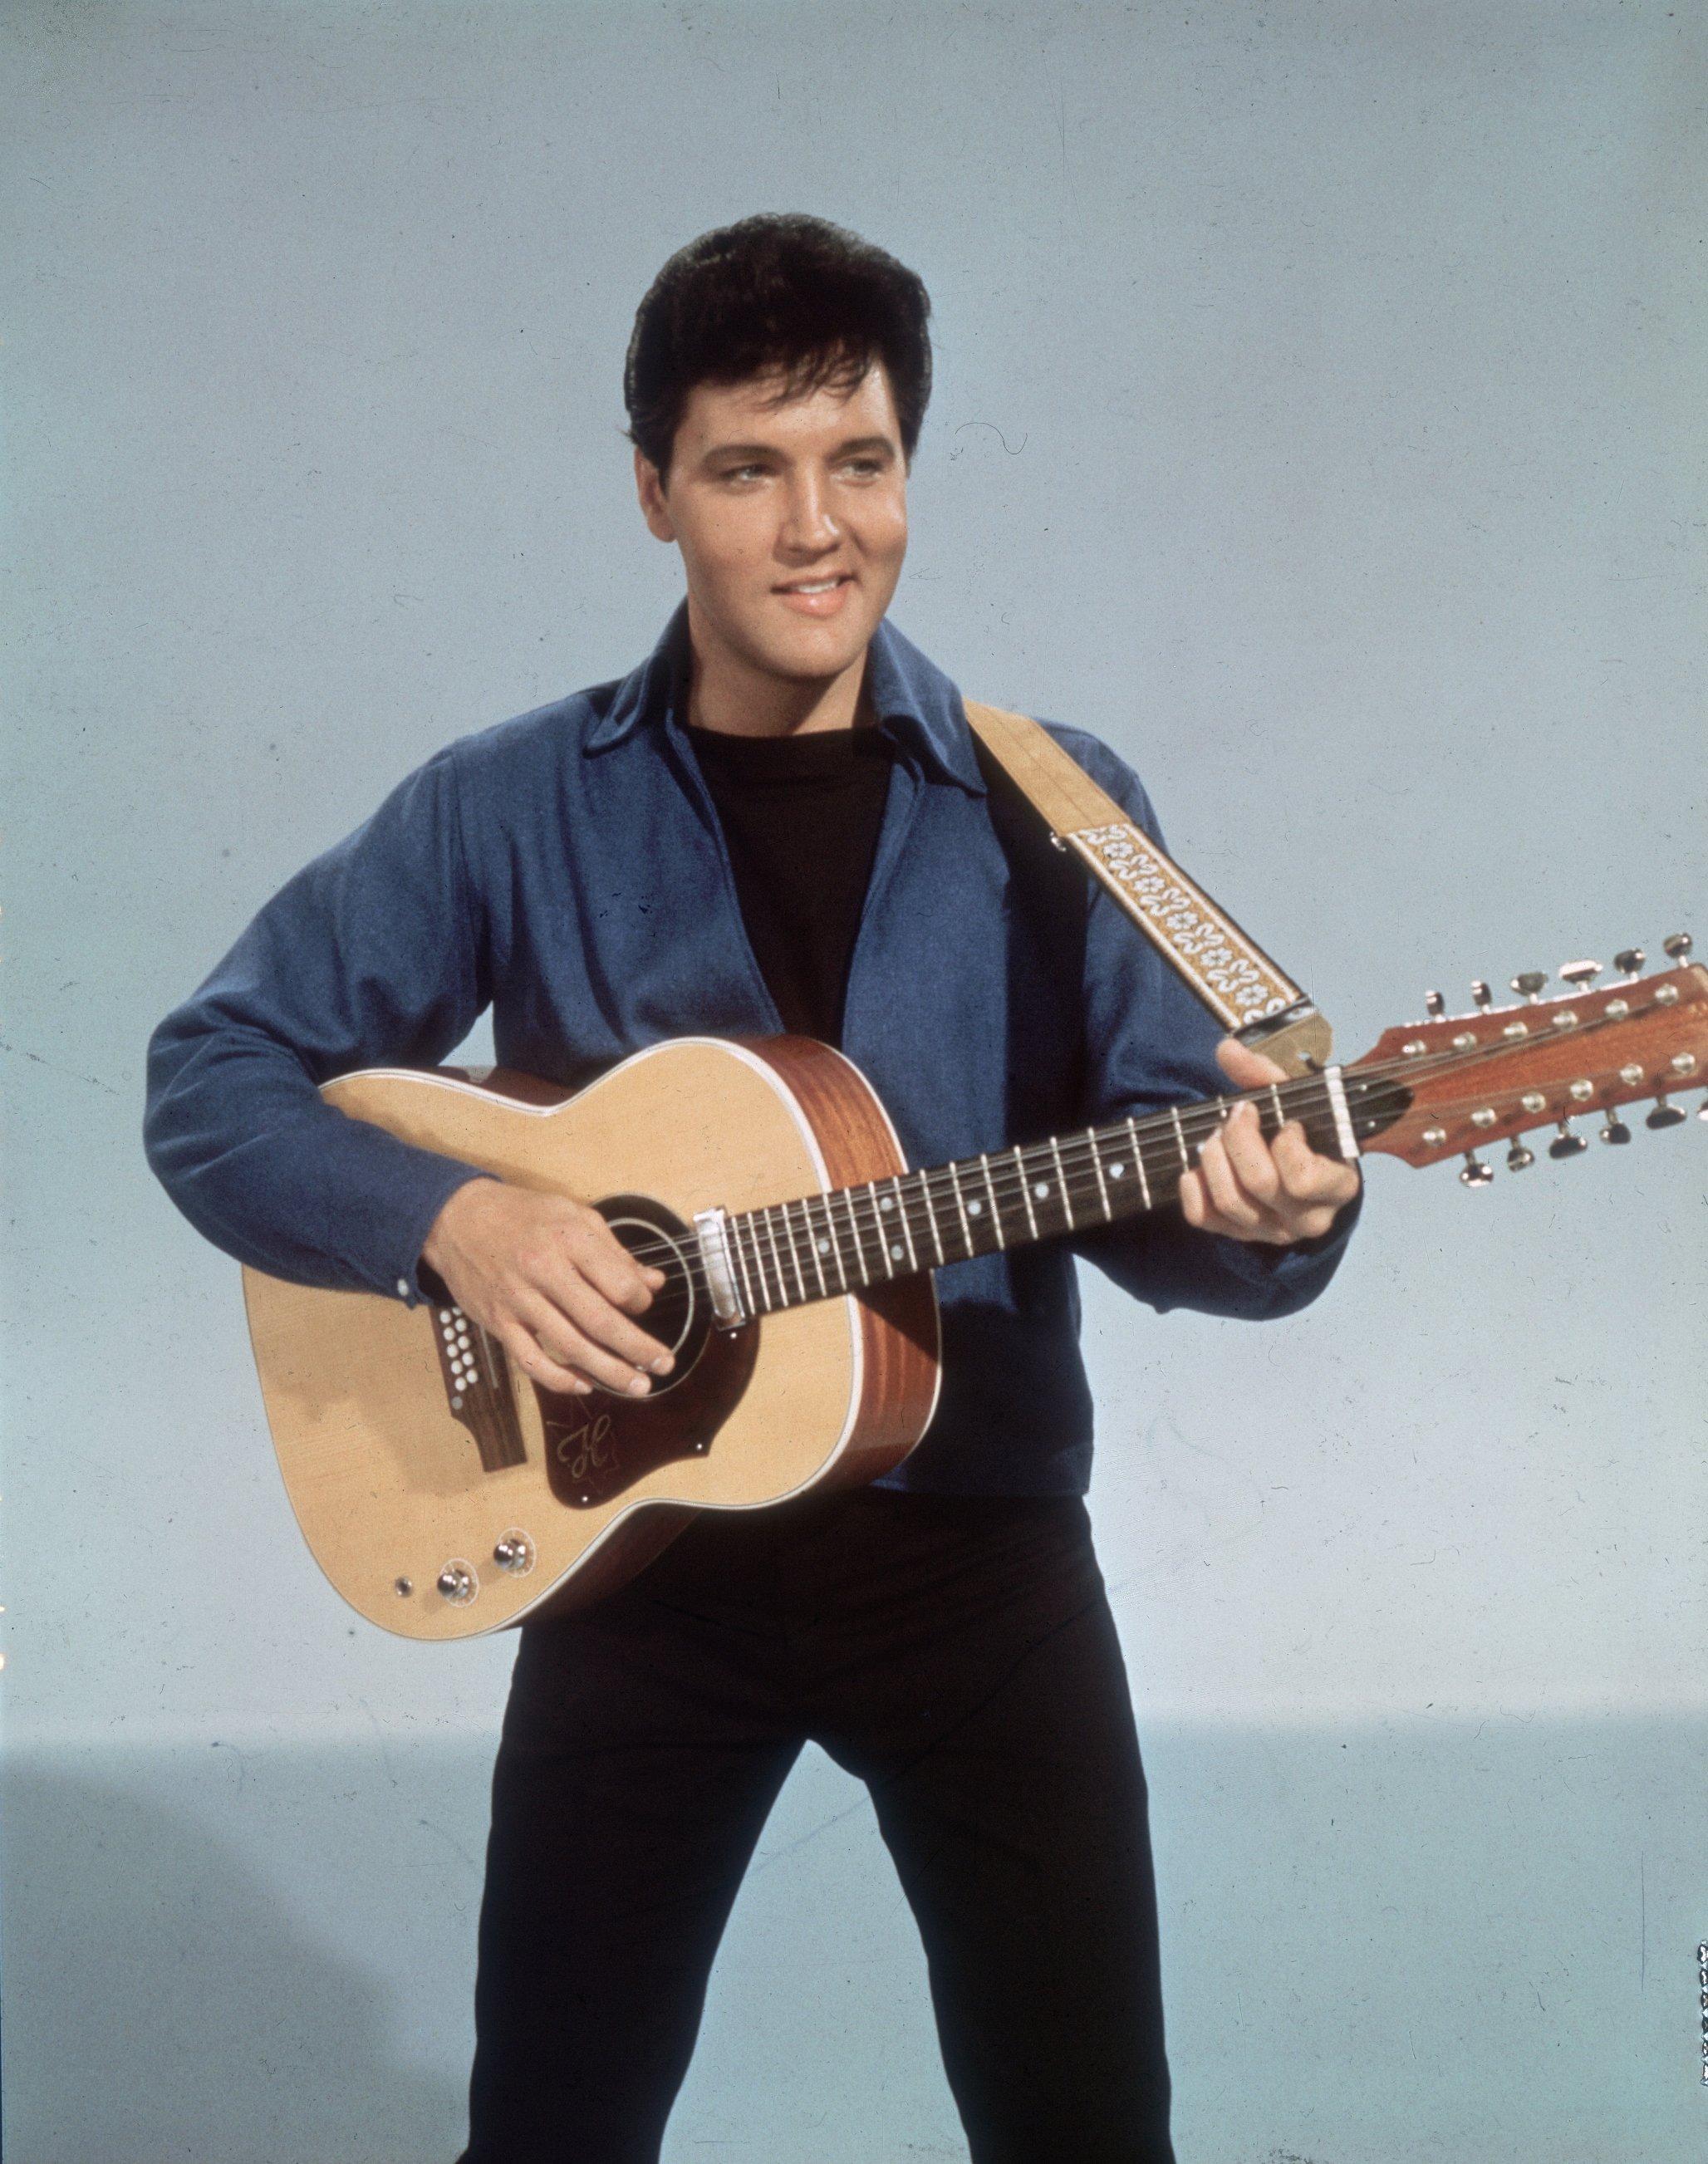 Elvis Presley photographed circa 1955